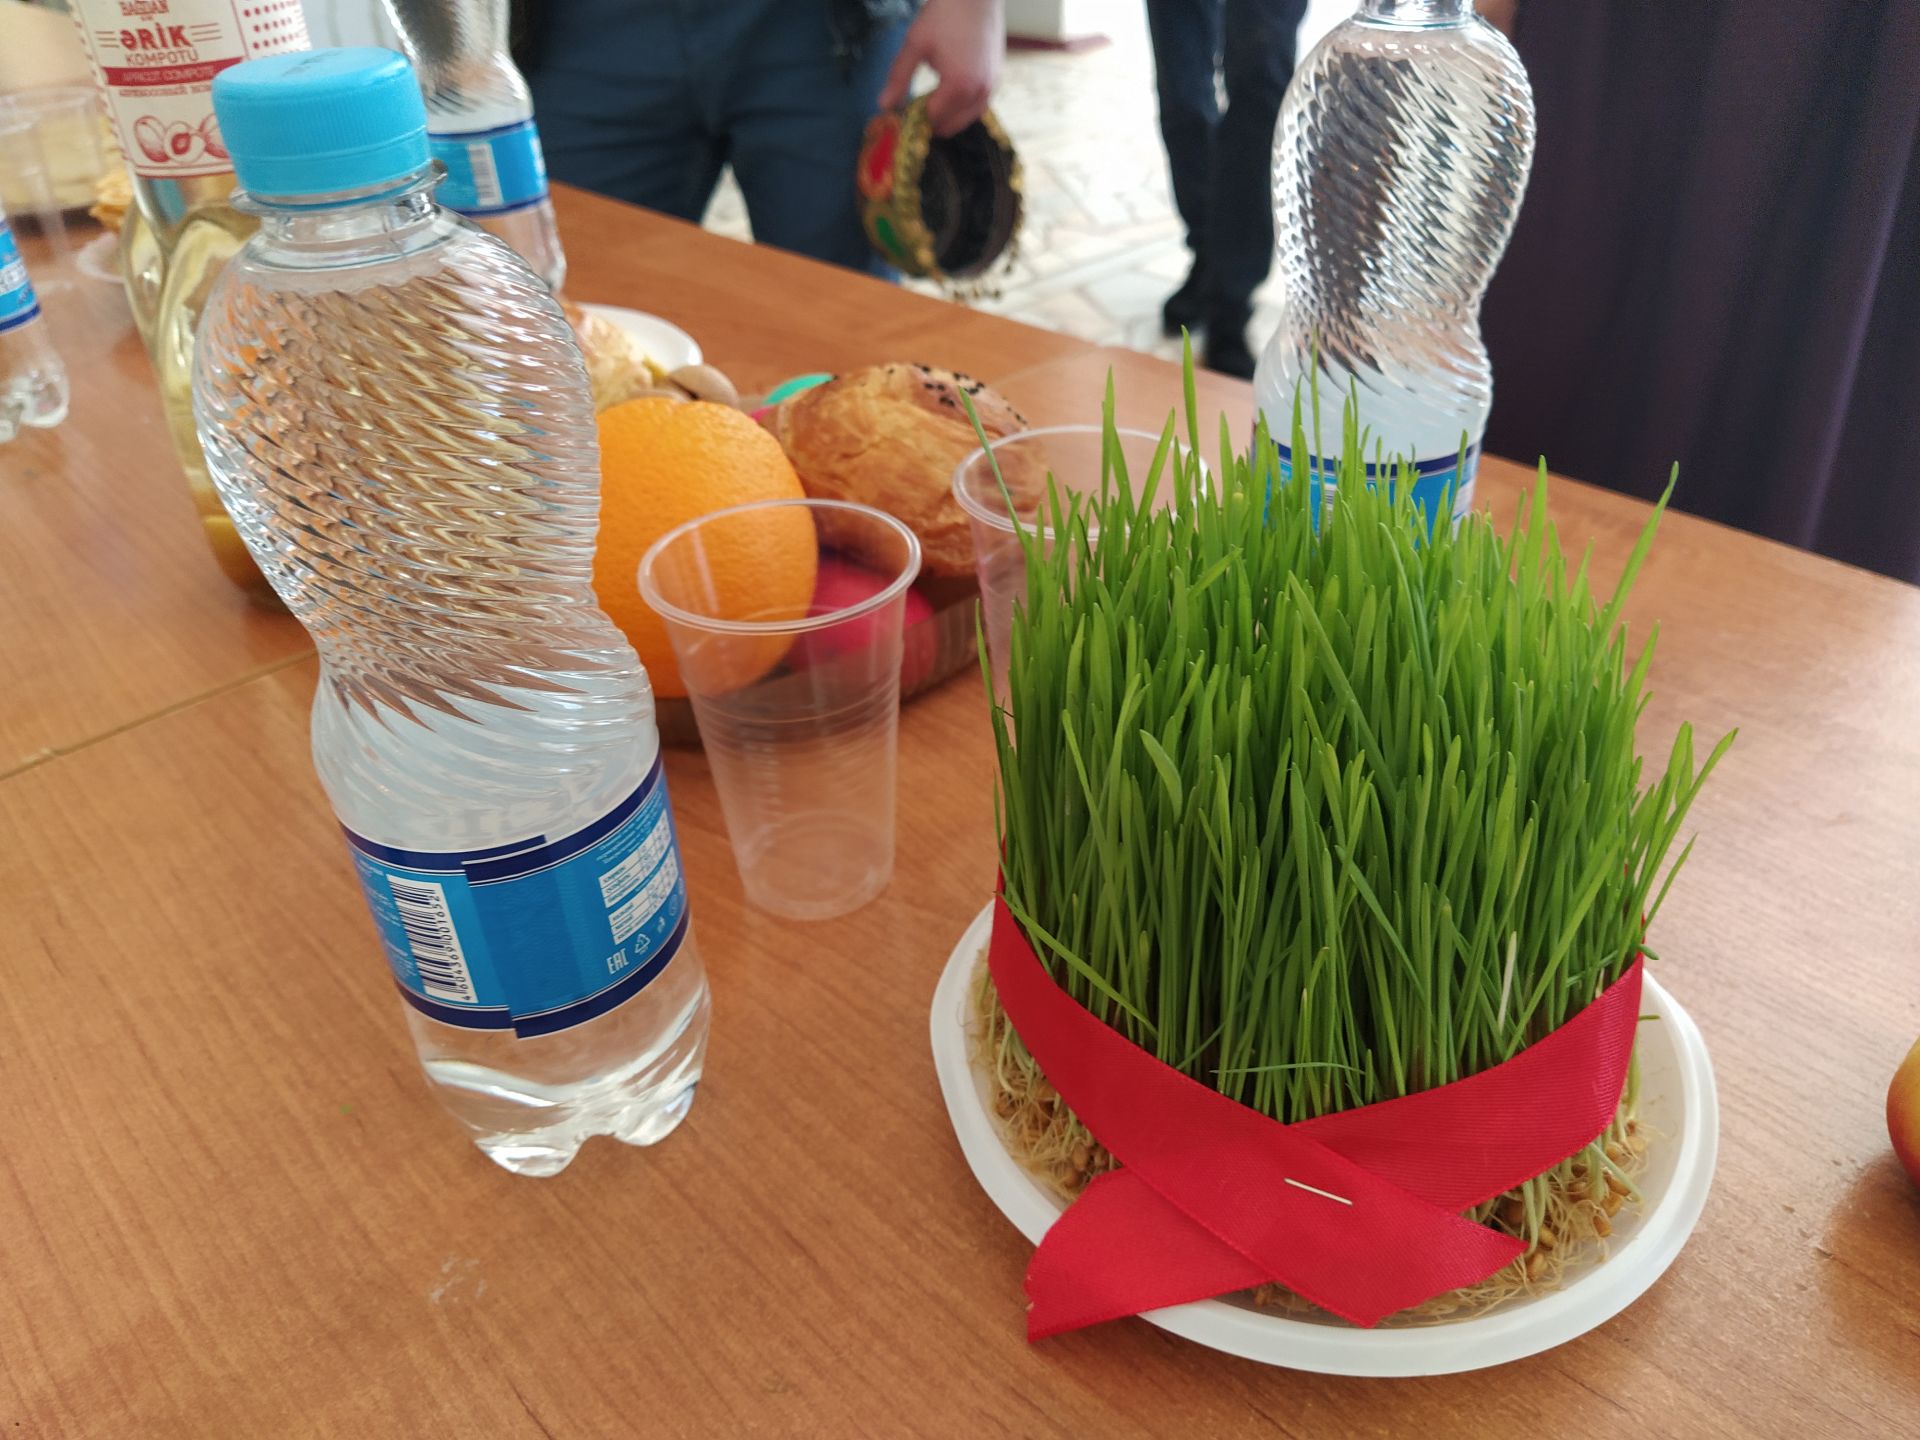 Национальные блюда, игры и танцы: в Чистополе отметили Науруз